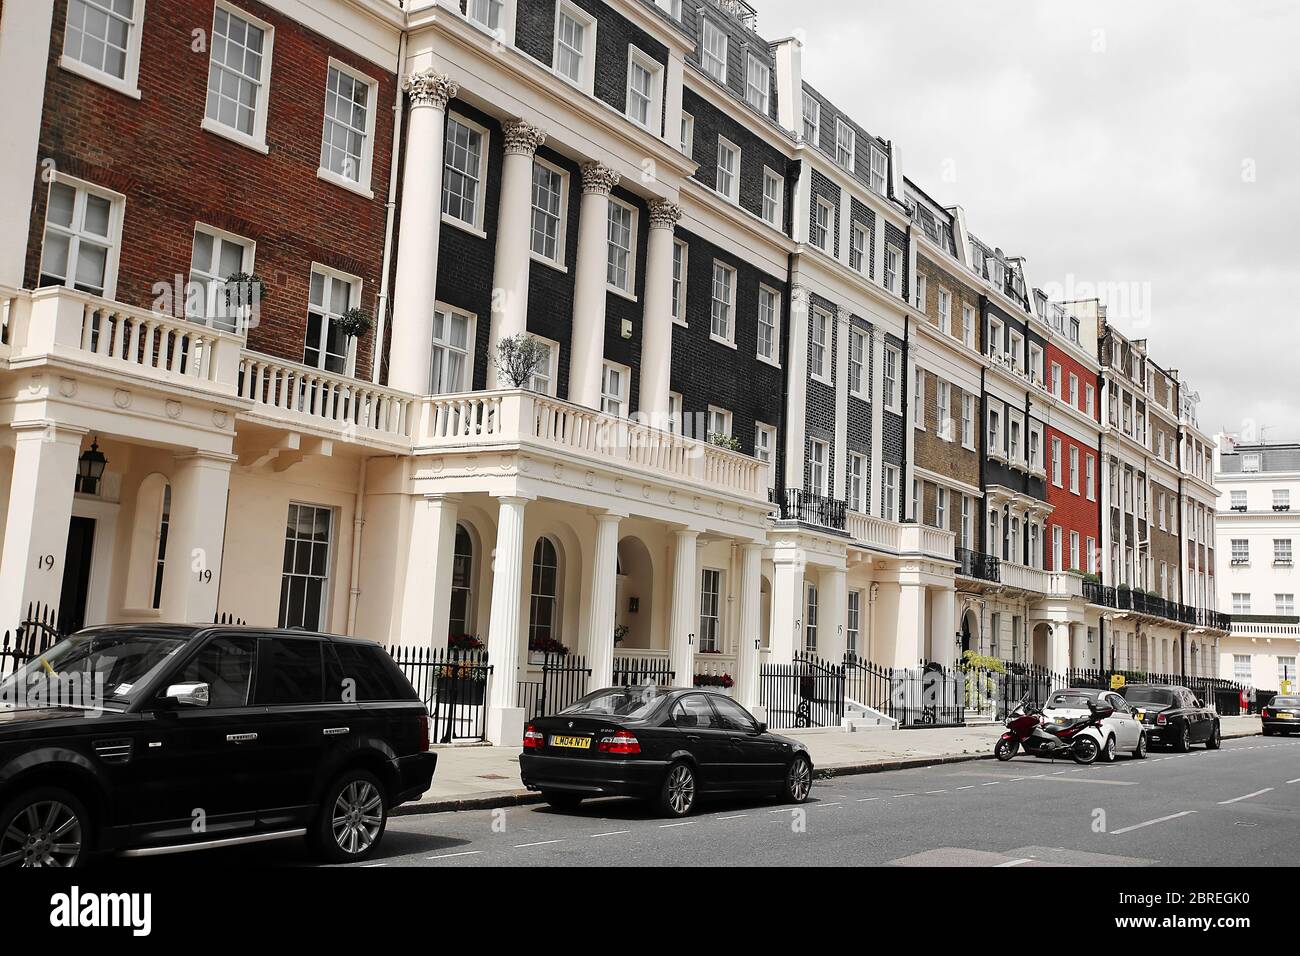 Vordereingänge eleganter Stadthäuser im wohlhabenden Londoner Stadtteil Belgravia. London, Großbritannien Stockfoto